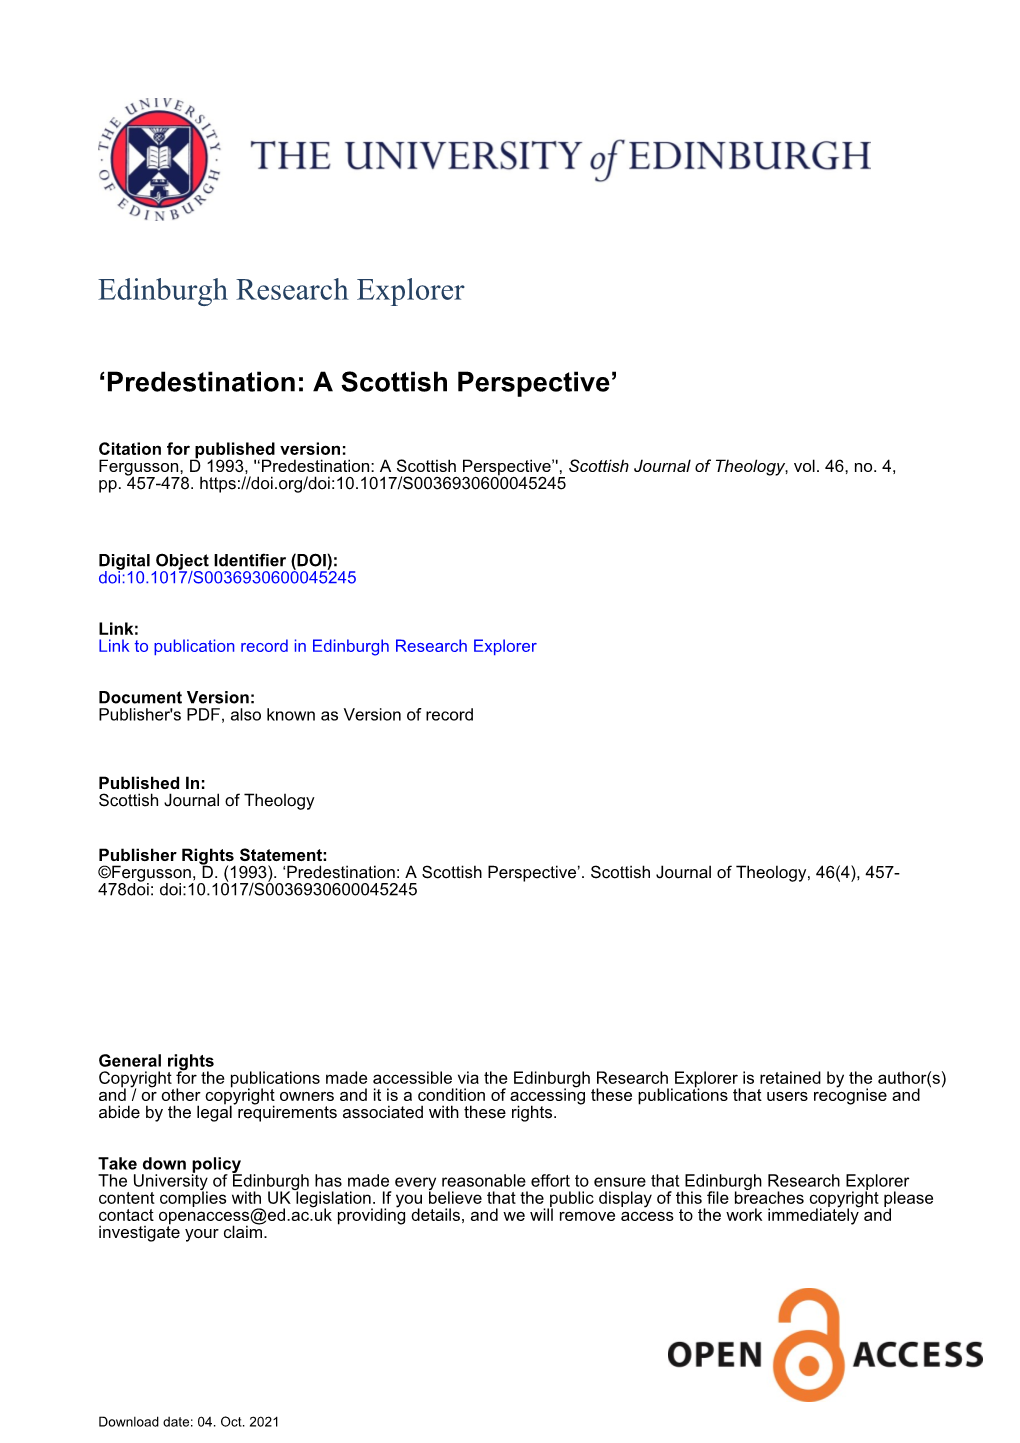 Predestination: a Scottish Perspective’